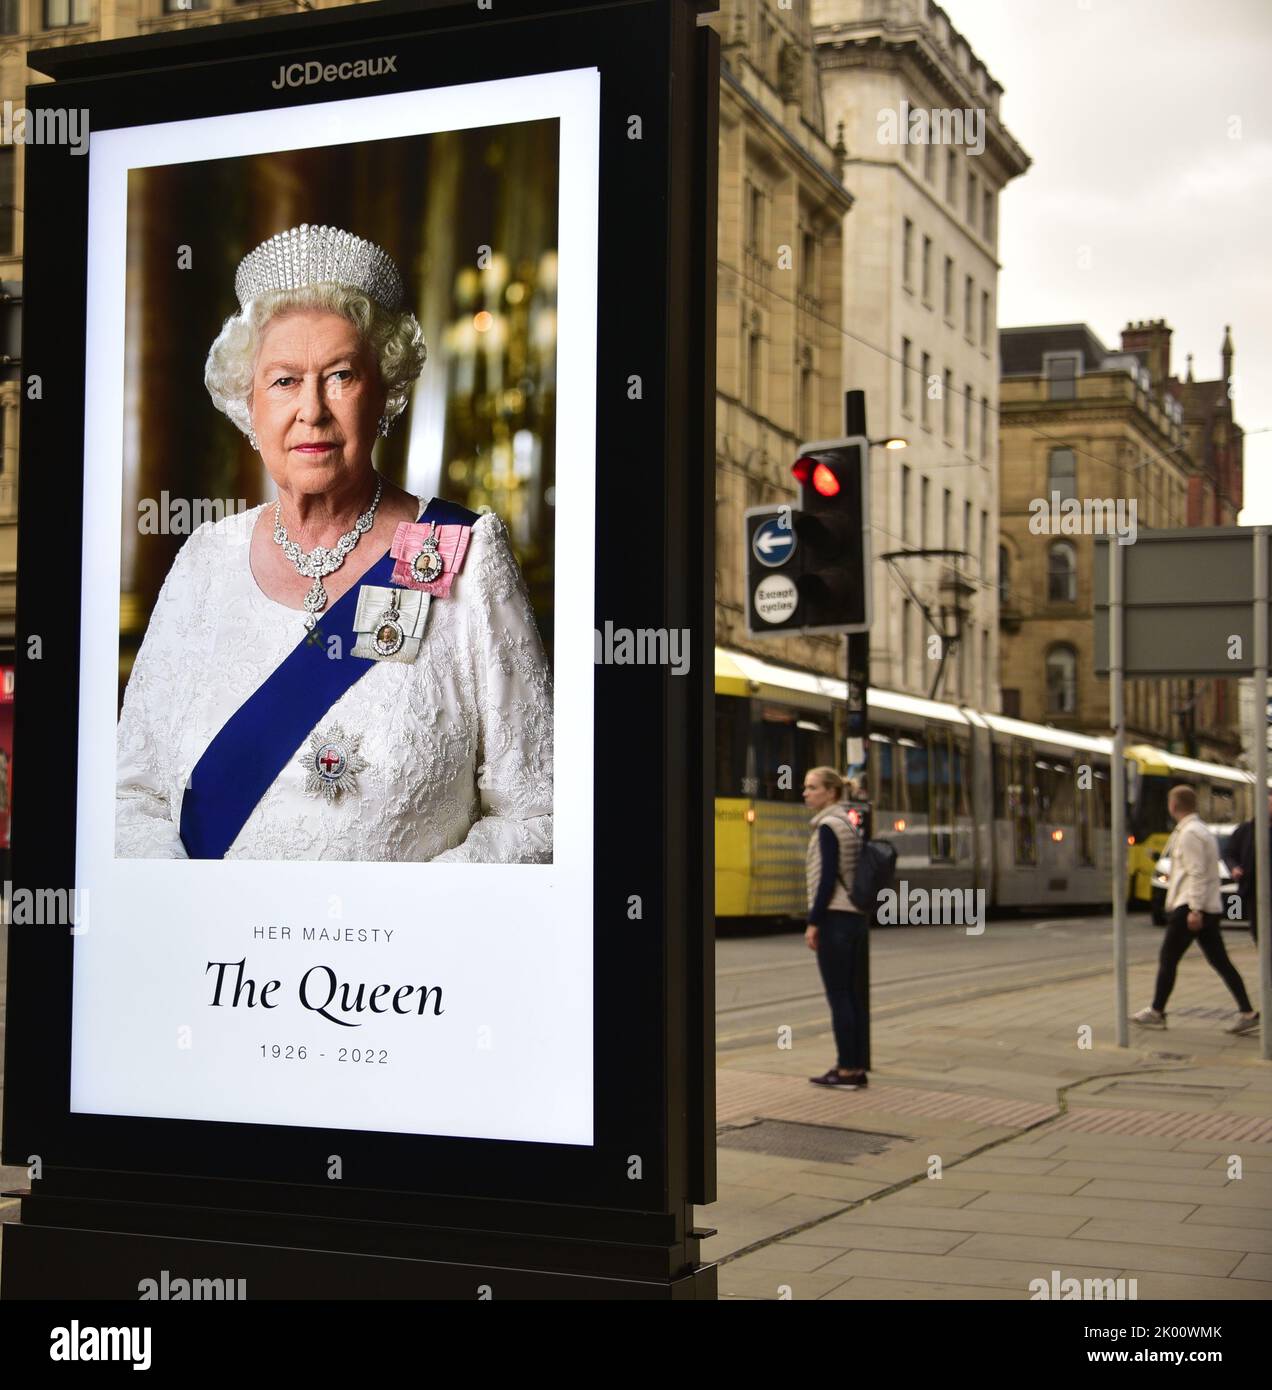 Manchester, Großbritannien, 9.. September 2022. Die Menschen gehen in Manchester, Großbritannien, an elektronischen Werbetafeln vorbei, auf denen Ihre Majestät, Königin Elizabeth II, zu sehen ist. Ihre Majestät, die Königin, starb im Alter von 96 Jahren am 8.. 2022. Der Stadtrat von Manchester hat auf seiner Website gesagt, dass die Stadt Manchester die offizielle 10-tägige Trauerperiode beobachten wird und dass: „Die Bewohner könnten Blumen zum Gedenken an den Tod Ihrer Majestät legen wollen. Am St. Ann's Square können Sie Blumen legen. Quelle: Terry Waller/Alamy Live News Stockfoto